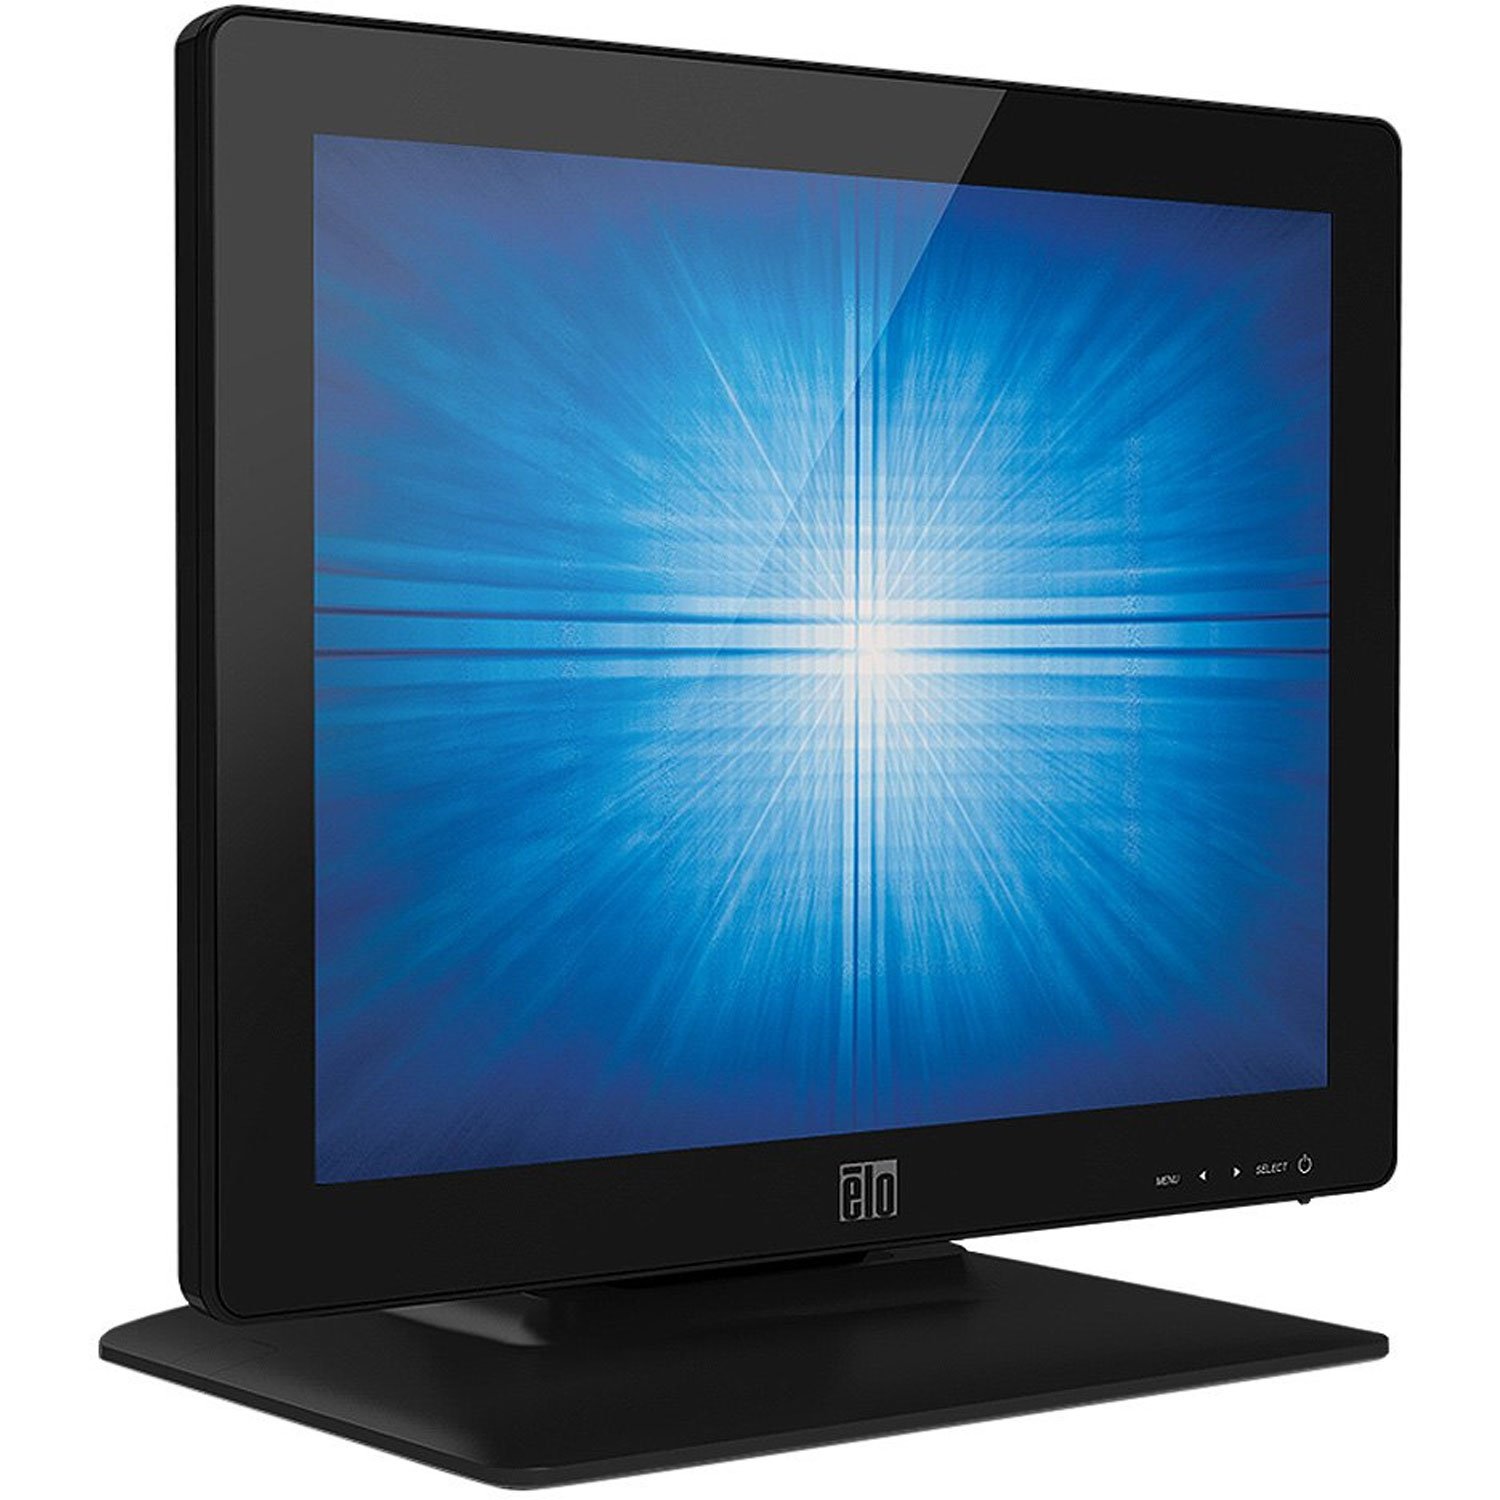 Elo E738607 1523L 15'' LED-Backlit LCD Monitor, Black